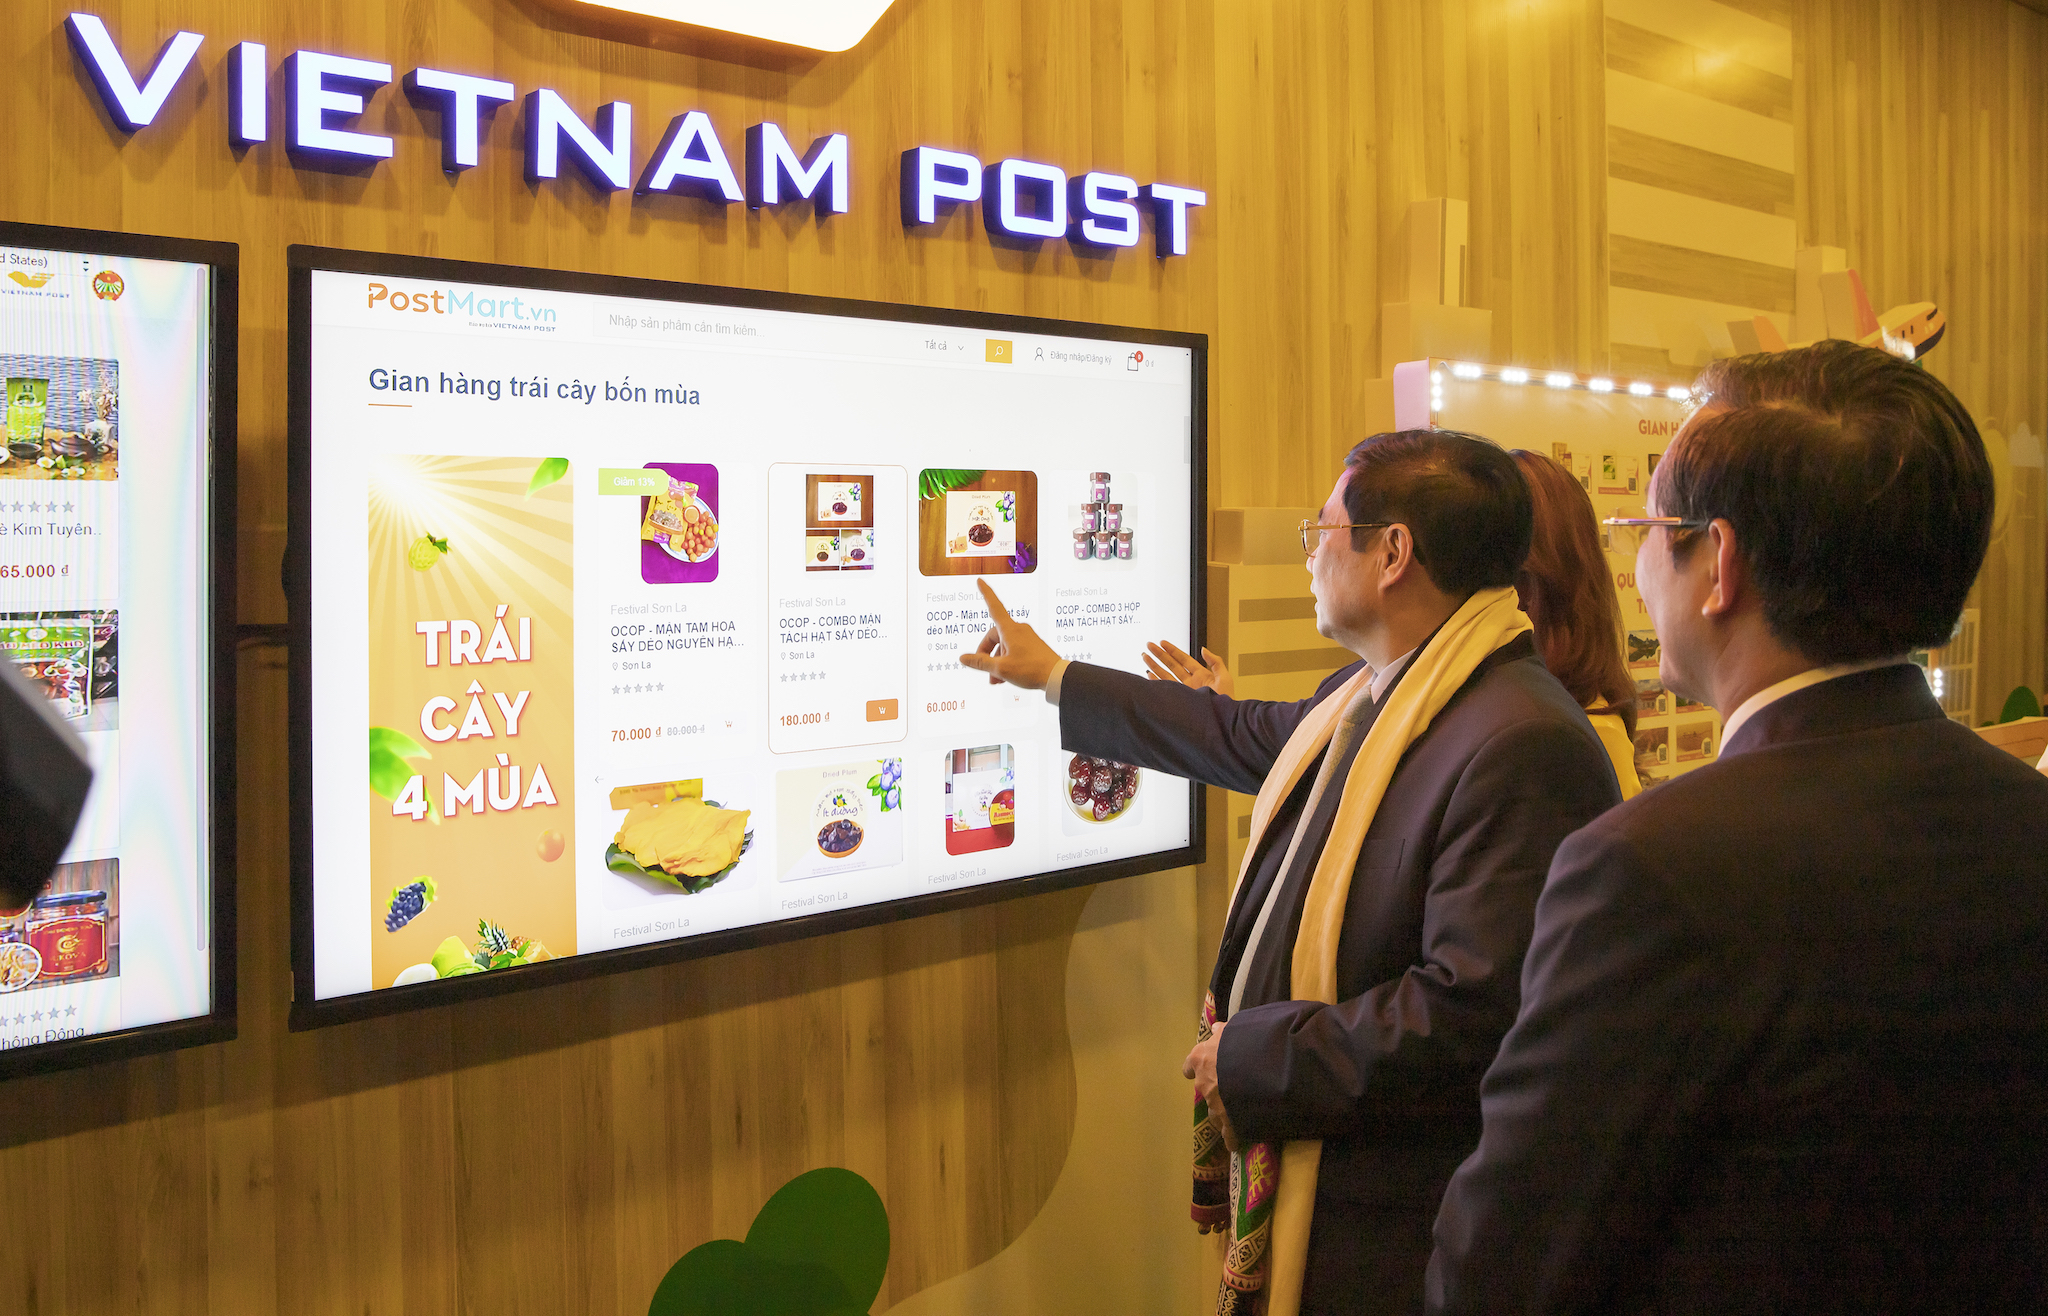 Thủ tướng Phạm Minh Chính trải nghiệm Festival số trên sàn TMĐT Postmart.vn của Bưu điện Việt Nam.